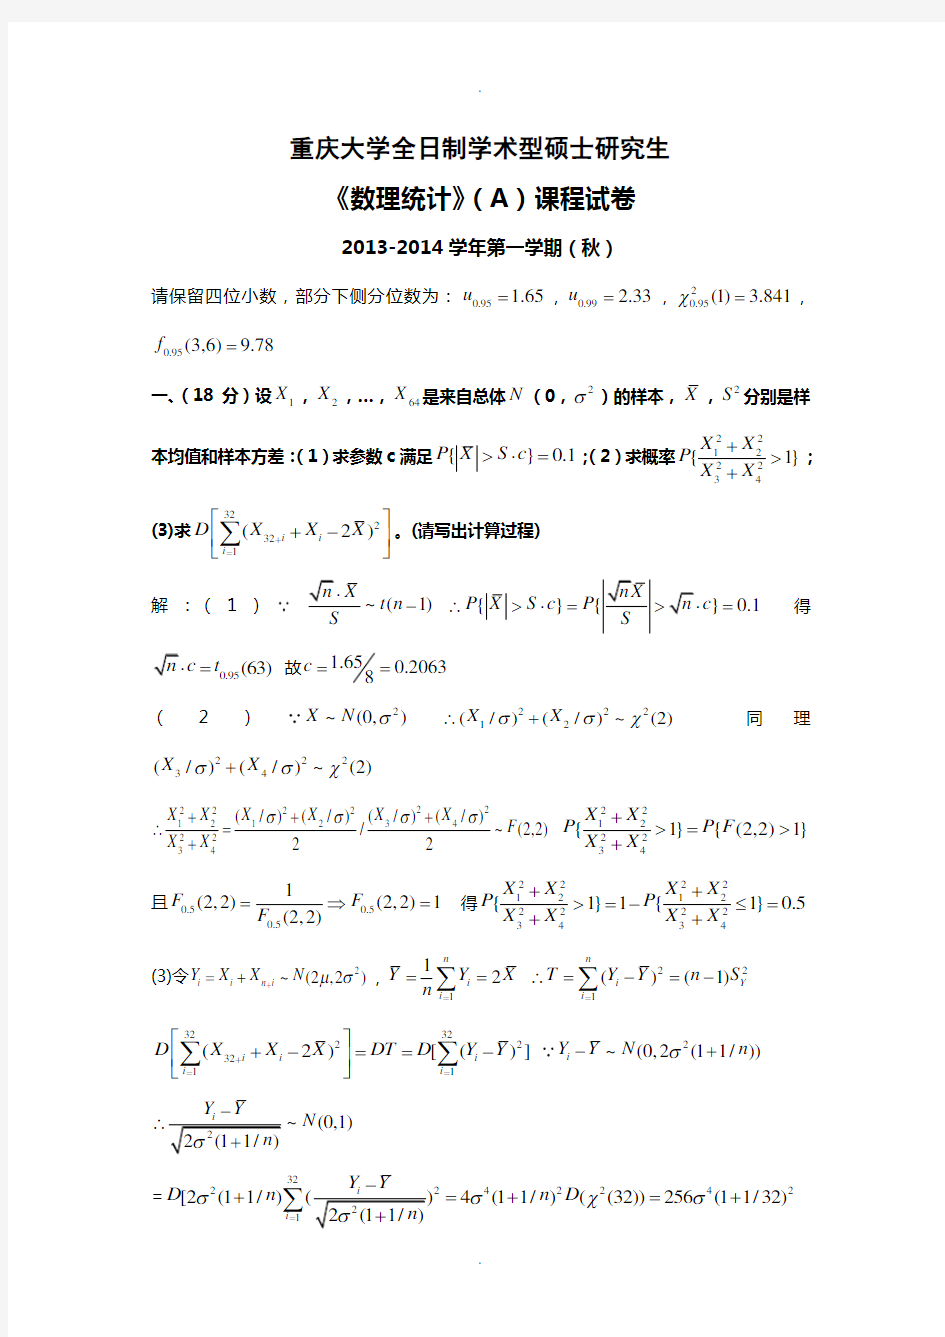 重庆大学2013-2014学年(秋)数理统计AB试题与答案